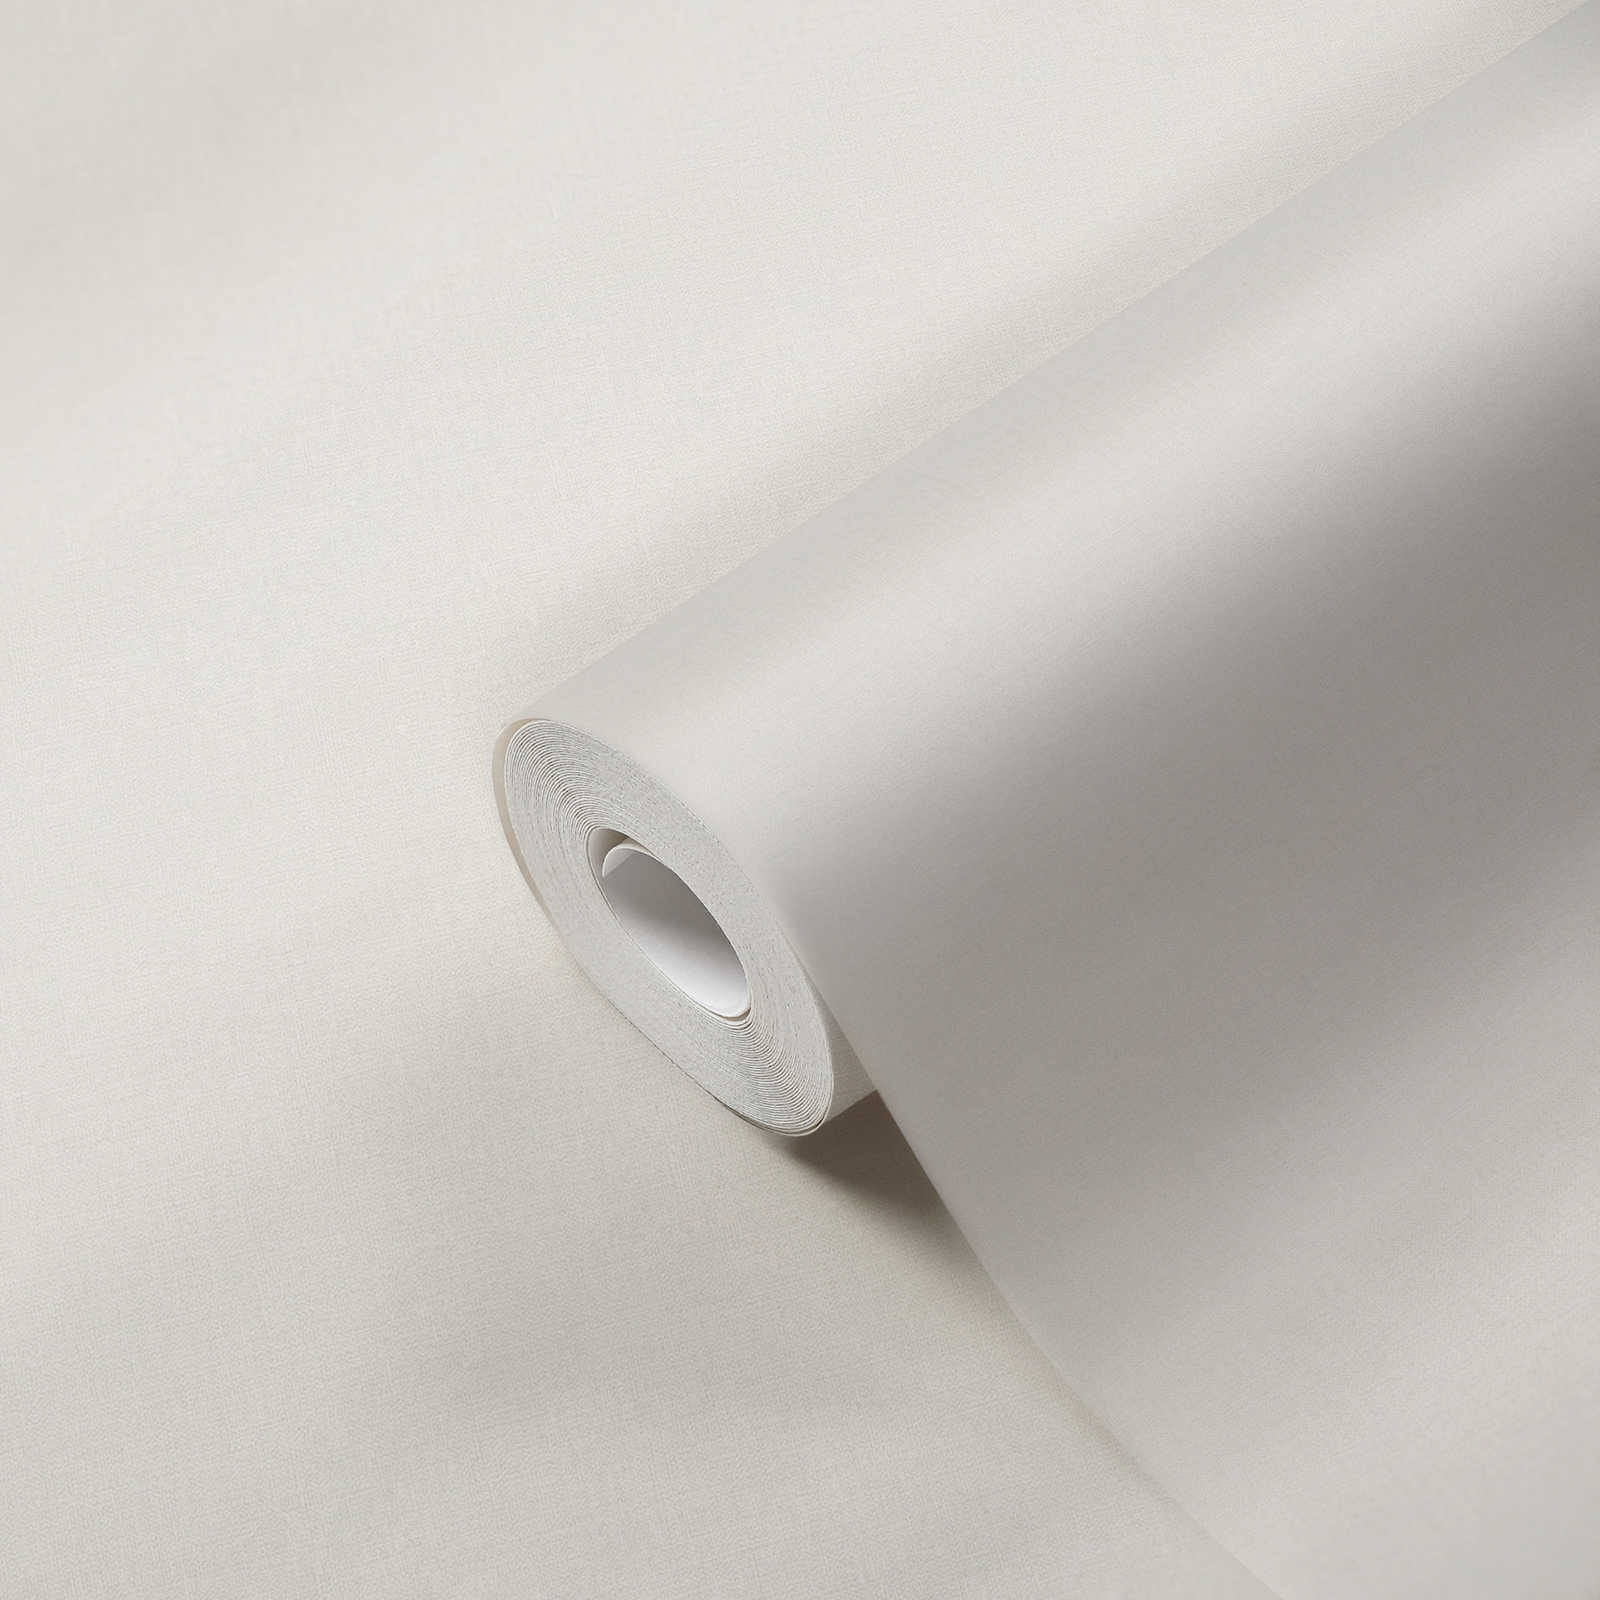             Papier peint uni légèrement structuré - crème, gris clair
        